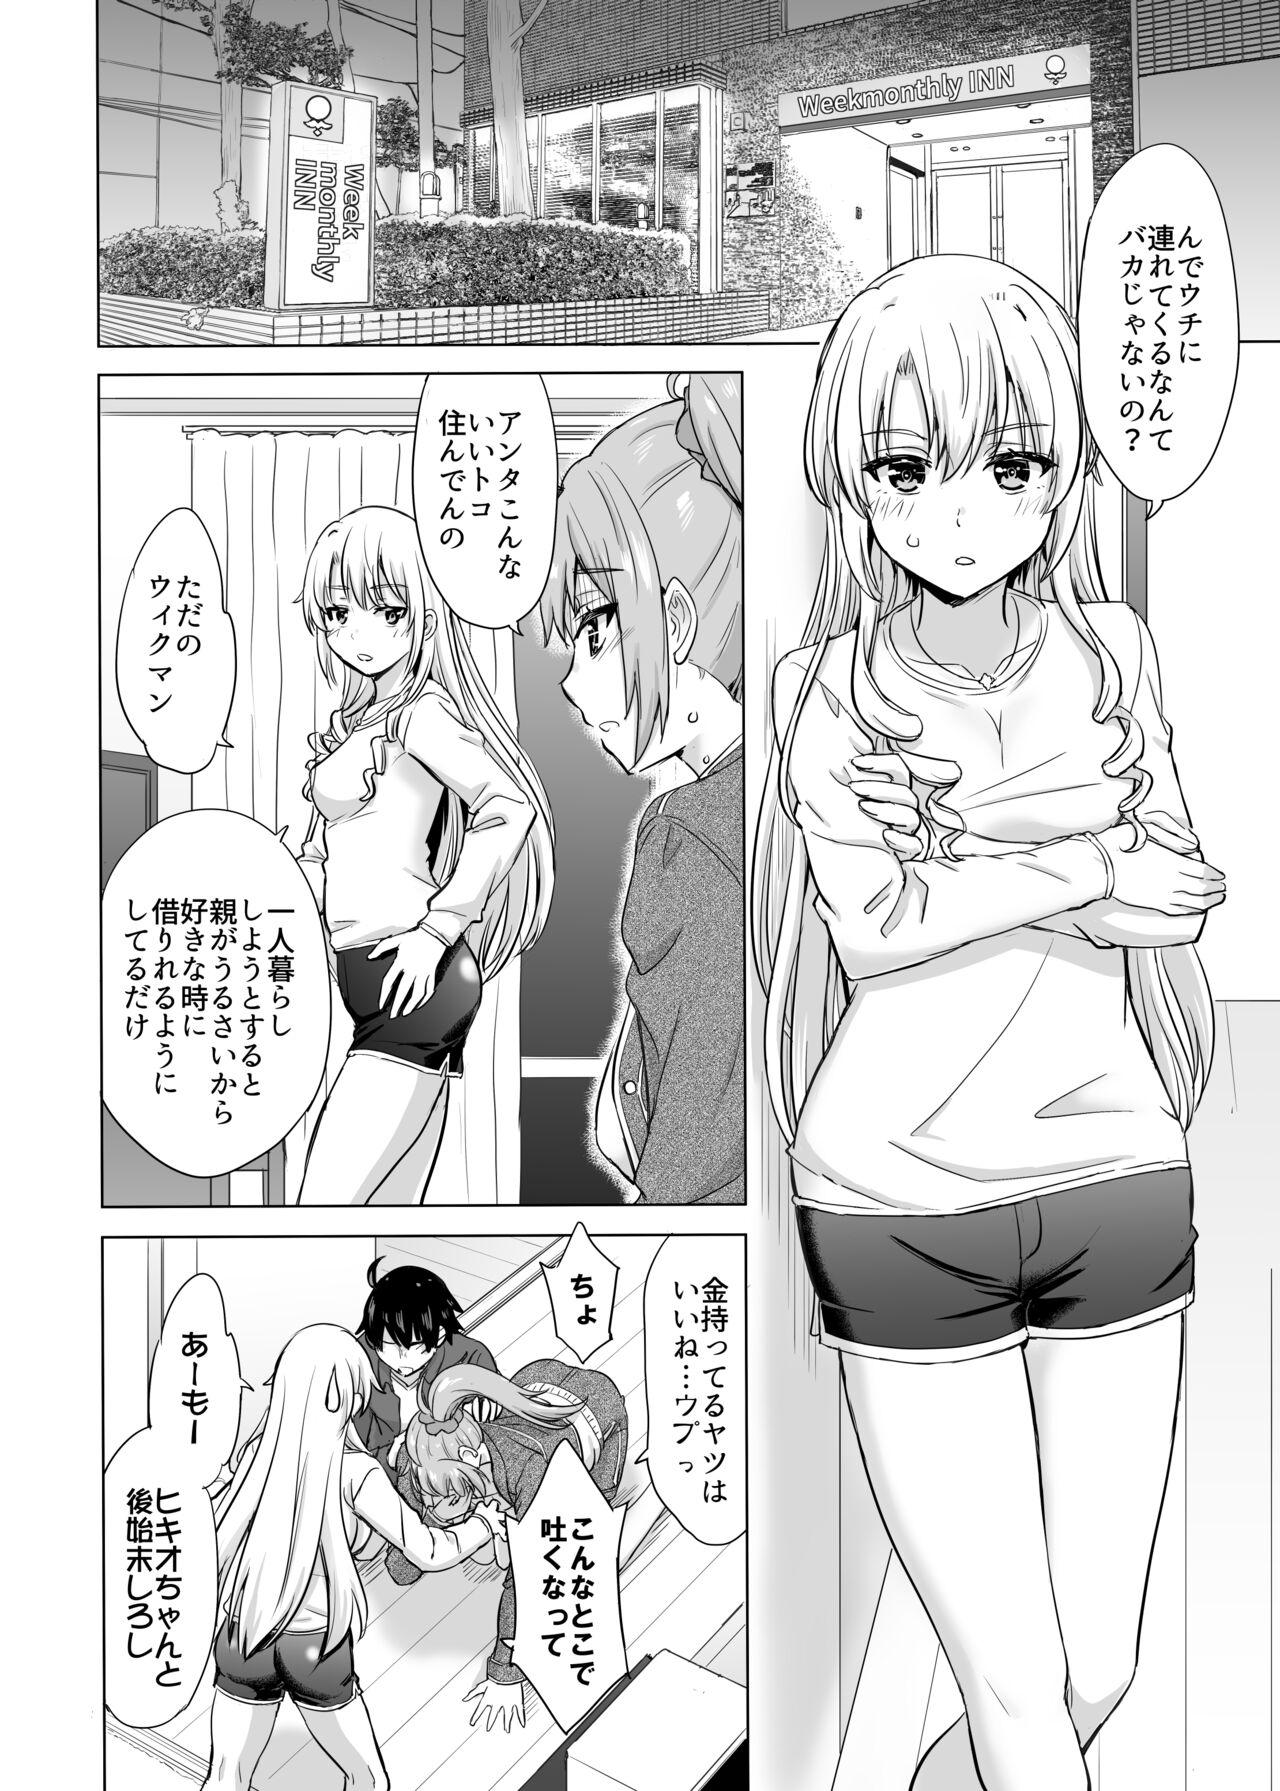 3way あーしさんサキサキ漫画 - Yahari ore no seishun love come wa machigatteiru Dad - Page 2